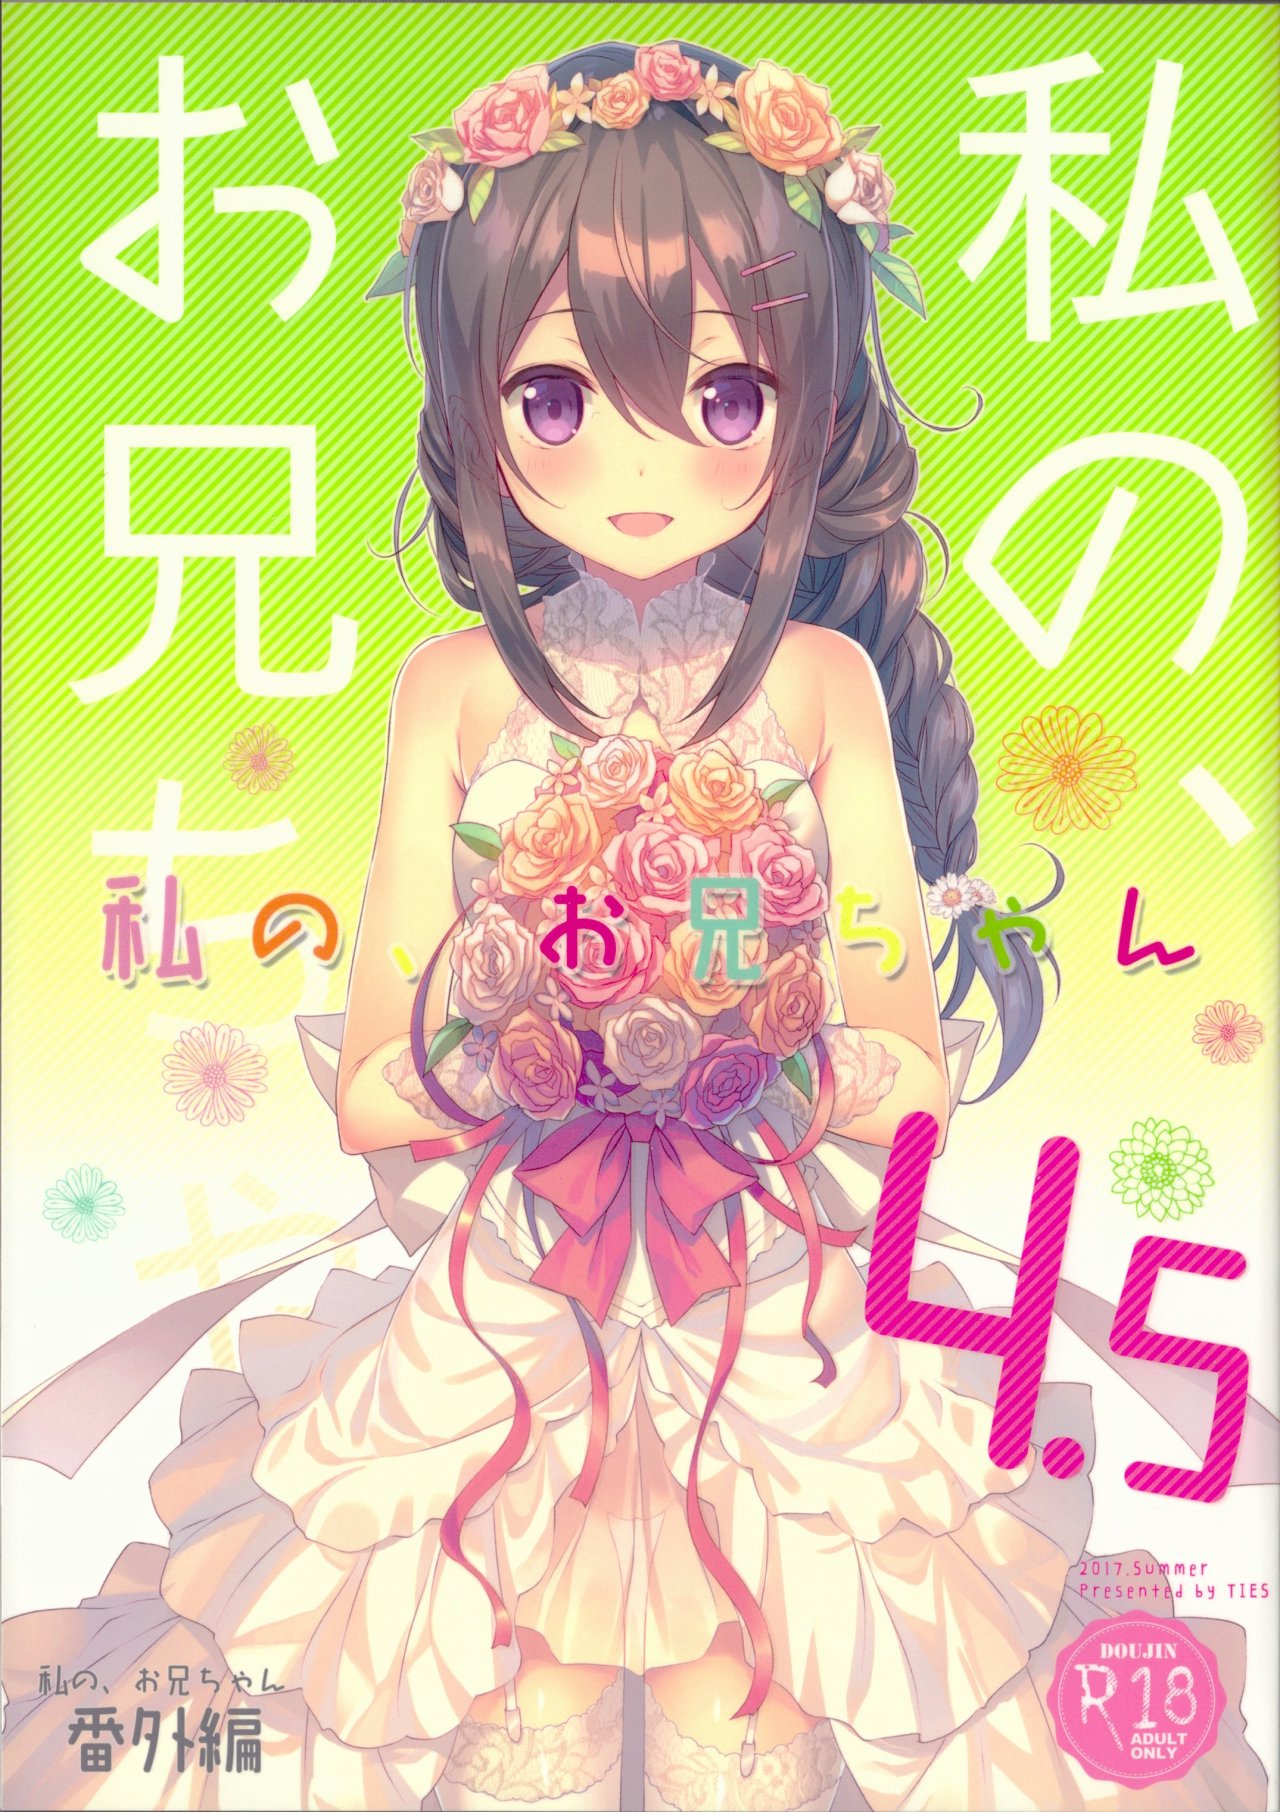 Watashi no, Onii-chan 4.5 - 0